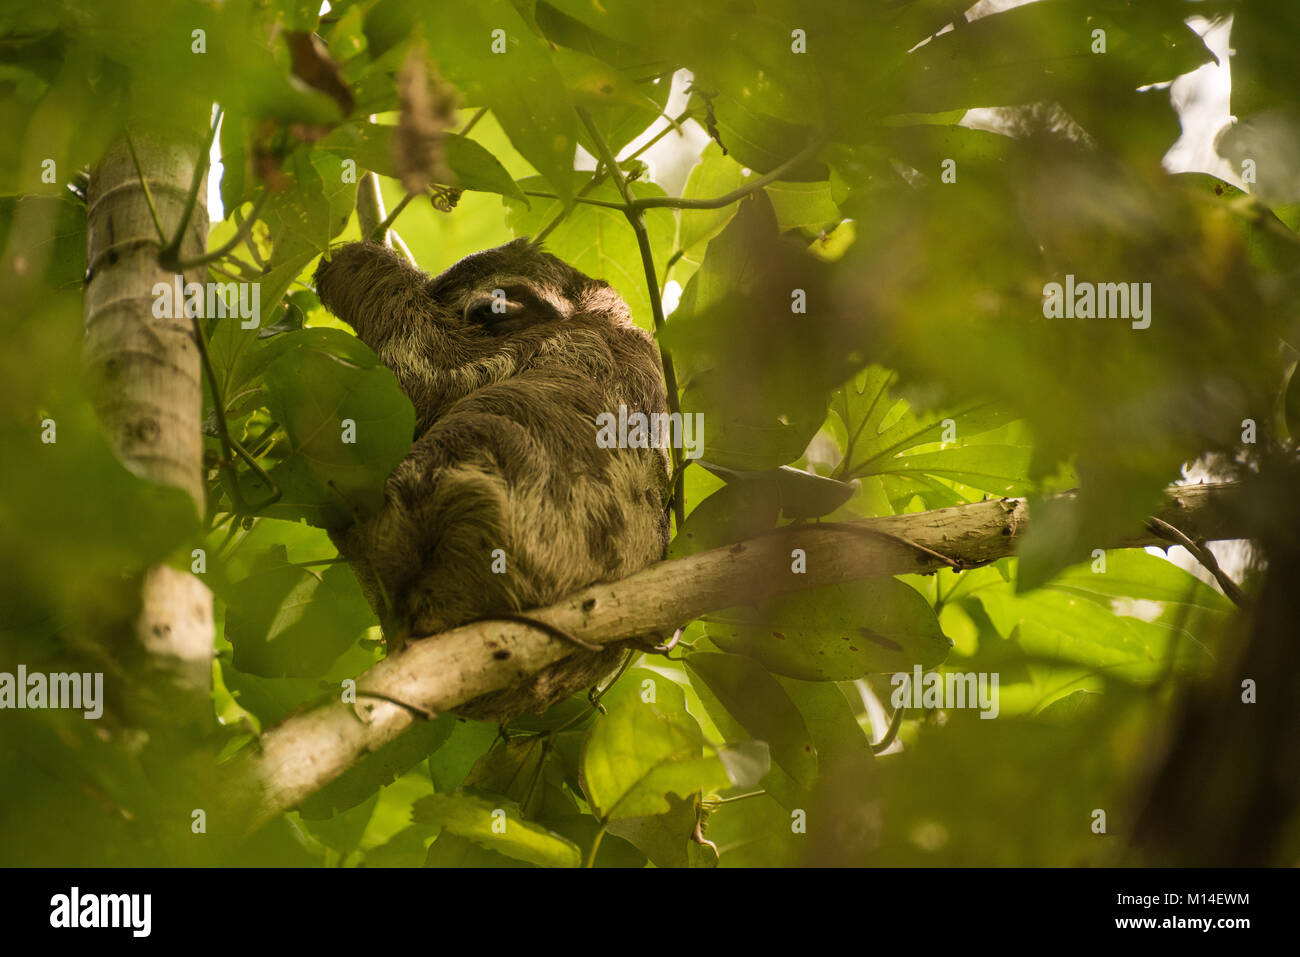 Un paresseux à gorge brune, l'une des trois espèces de paresseux tridactyle, dormir dans un arbre dans la jungle amazonienne. Banque D'Images